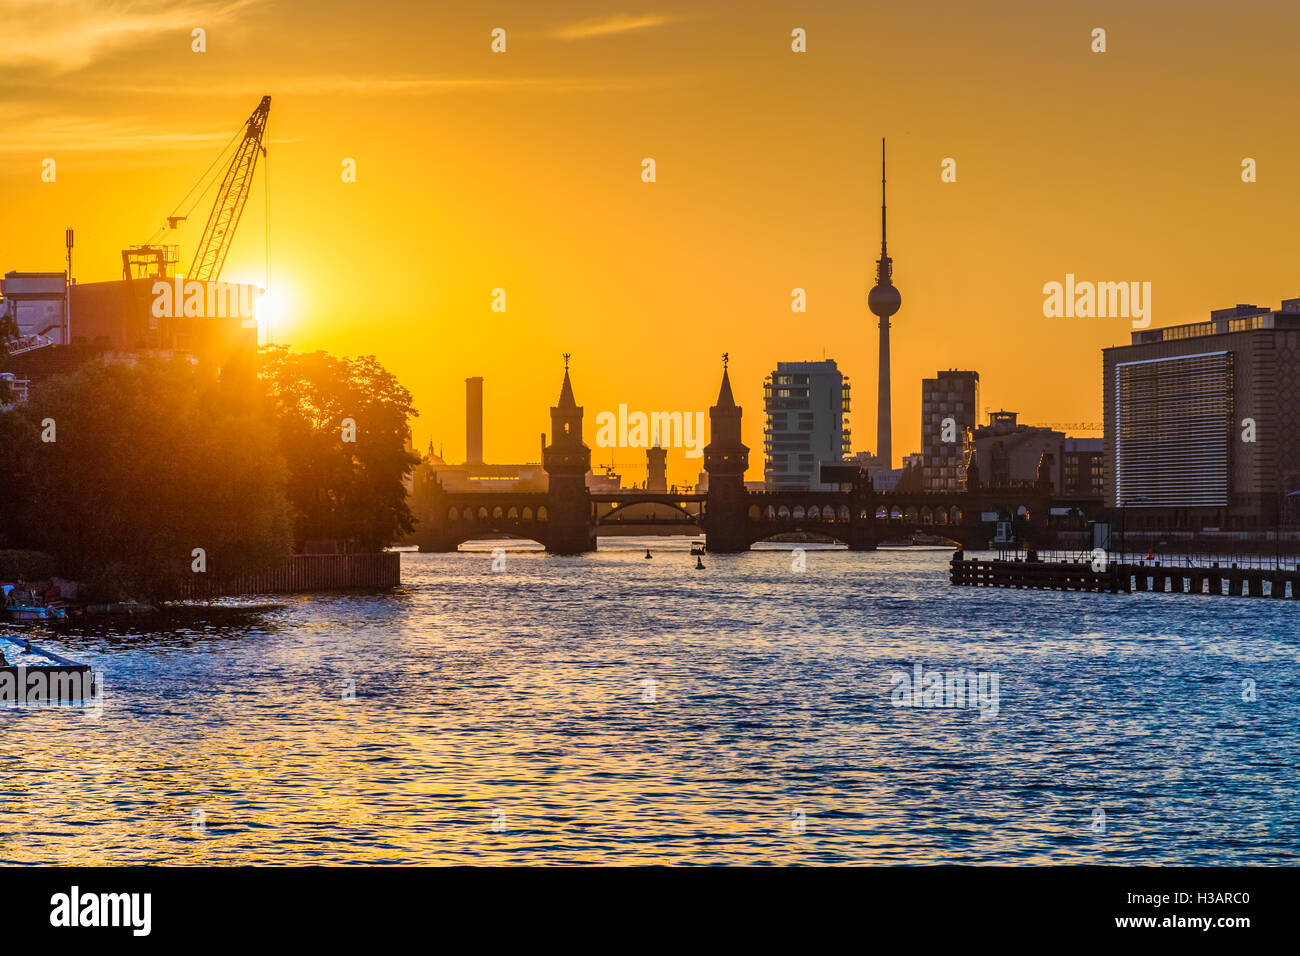 Klassische Ansicht der Berliner Skyline mit berühmten Fernsehturm und Oberbaumbrücke am Fluss Spree im Abendlicht bei Sonnenuntergang, Deutschland Stockfoto